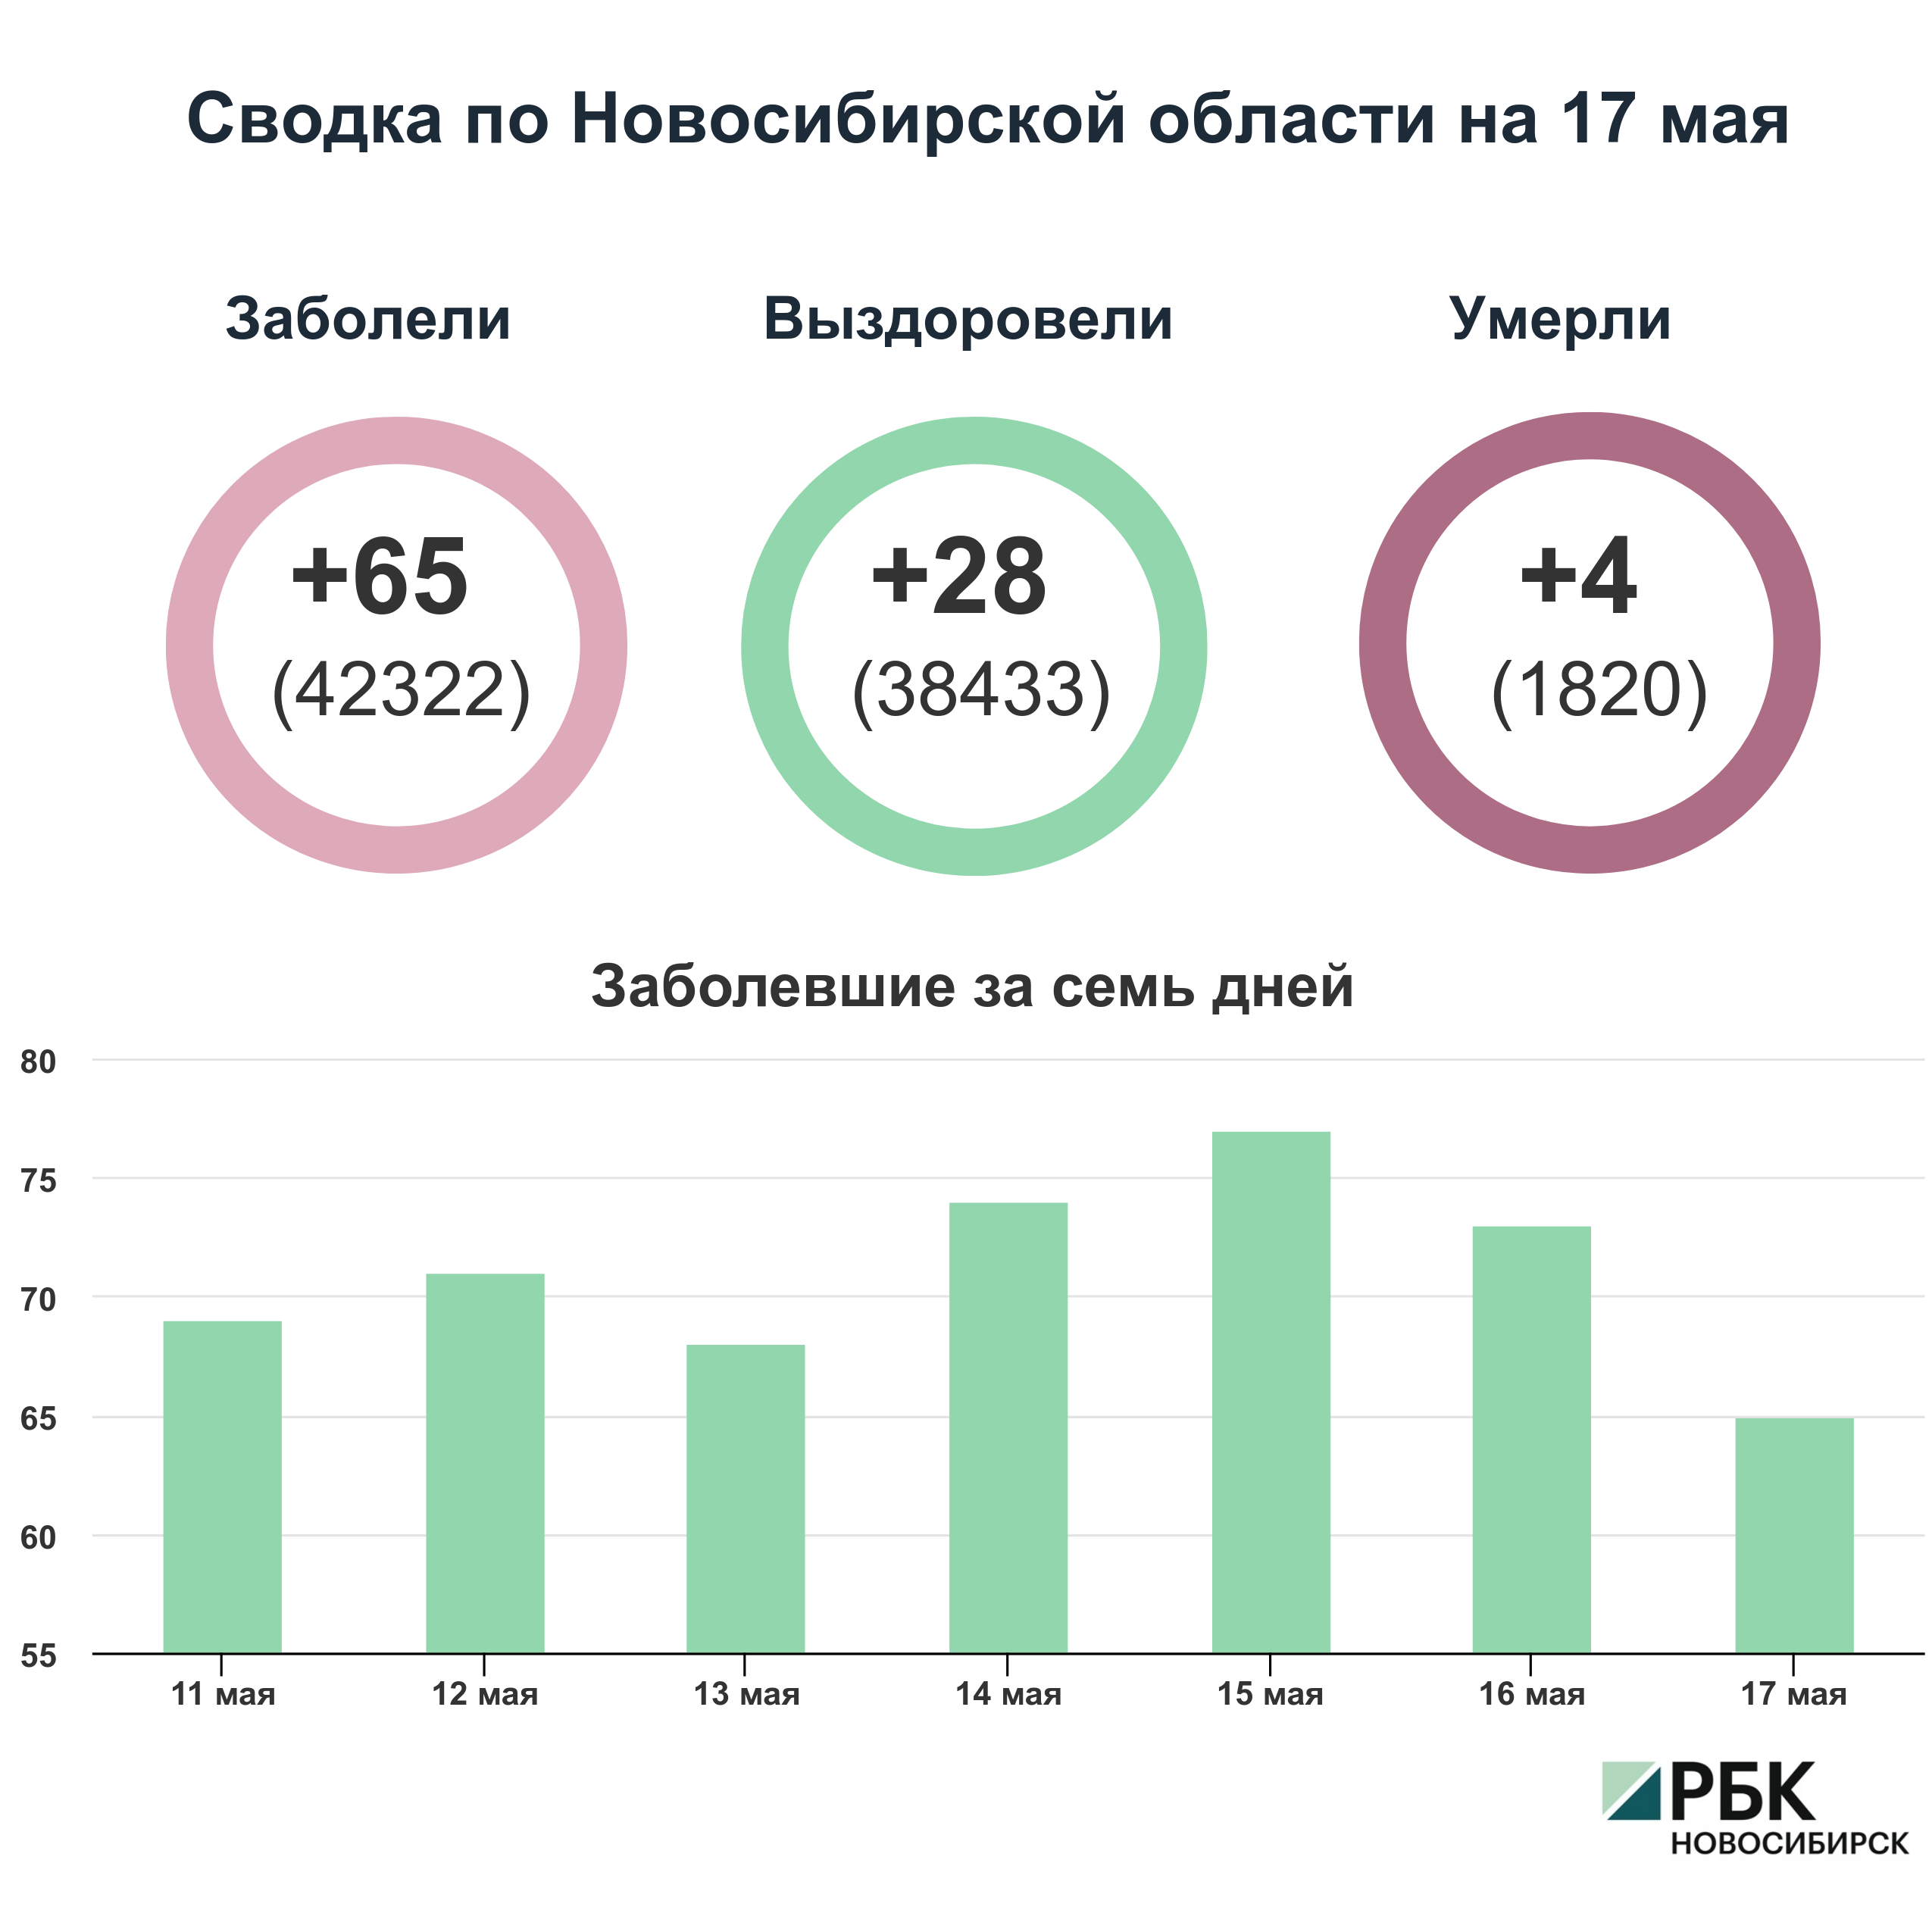 Коронавирус в Новосибирске: сводка на 17 мая